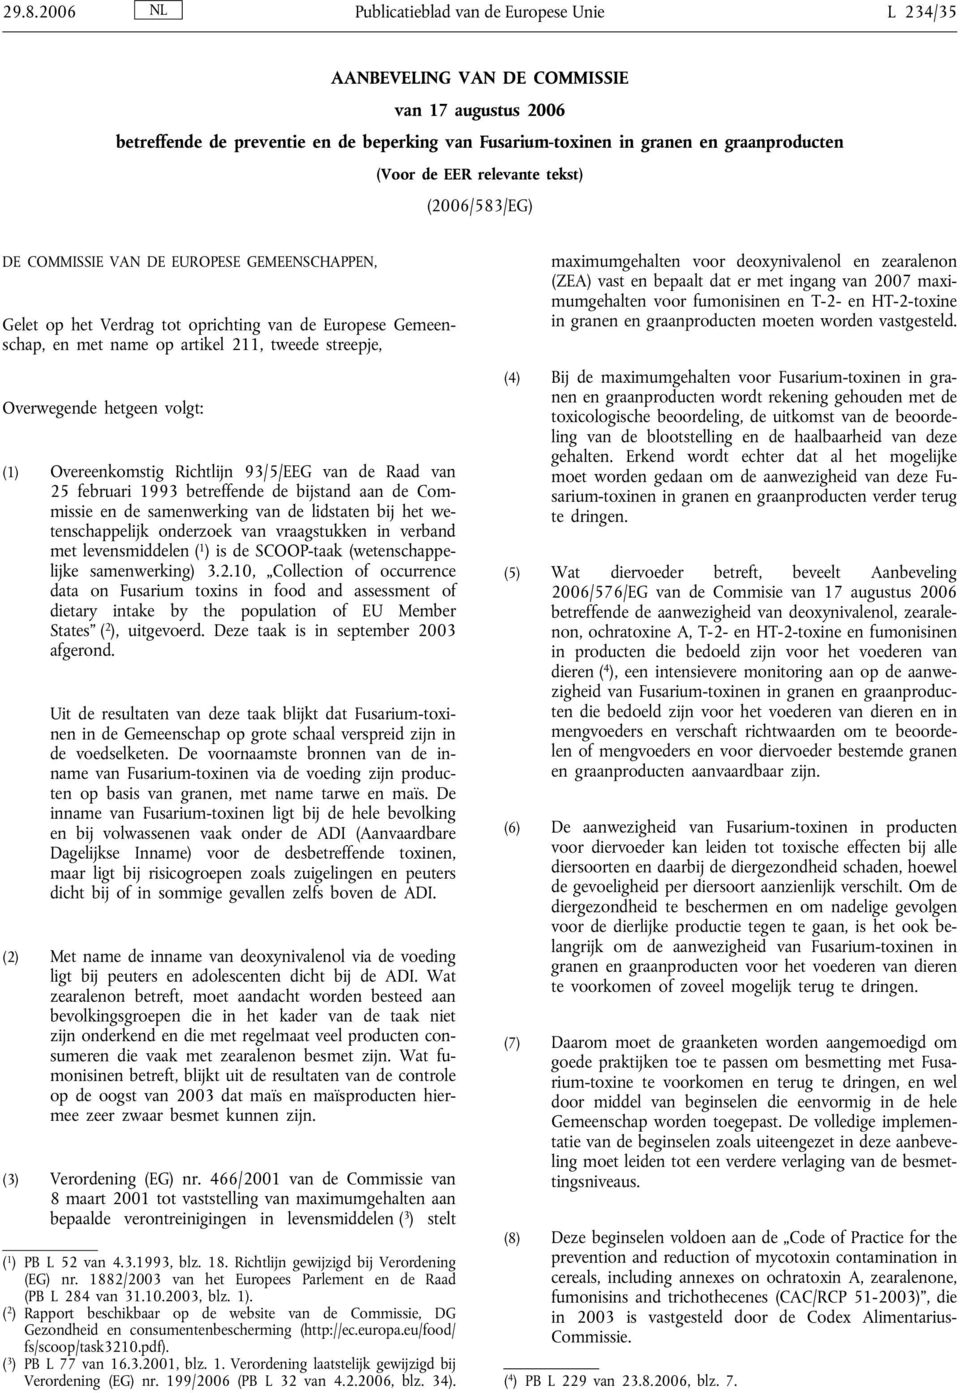 Overwegende hetgeen volgt: (1) Overeenkomstig Richtlijn 93/5/EEG van de Raad van 25 februari 1993 betreffende de bijstand aan de Commissie en de samenwerking van de lidstaten bij het wetenschappelijk